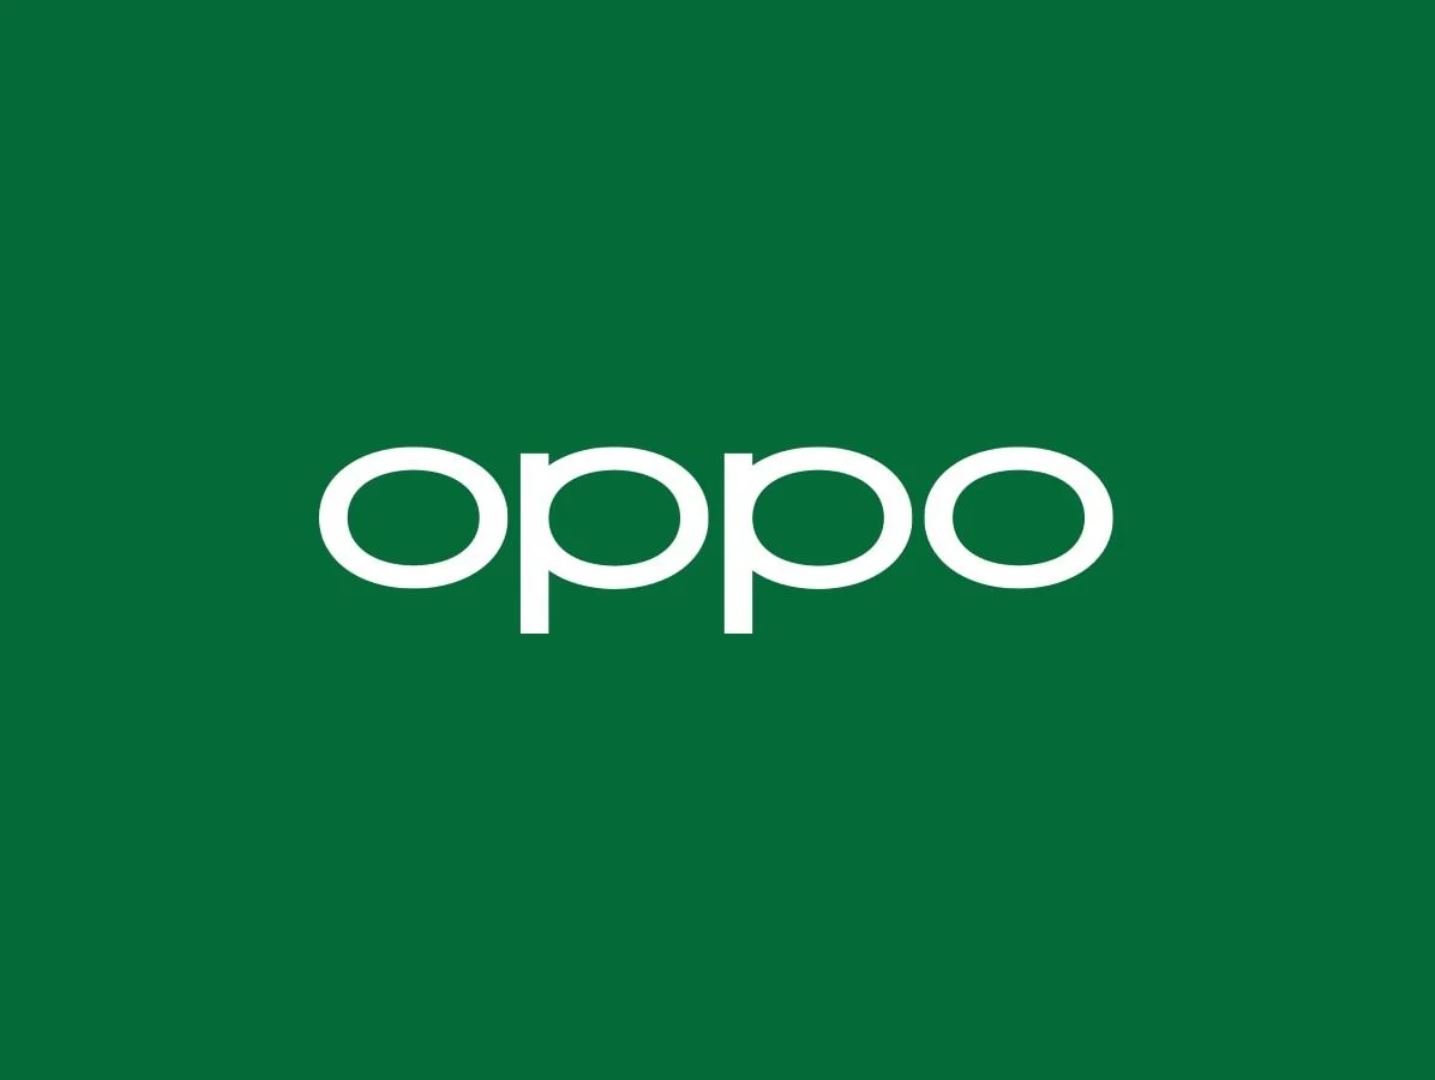 OPPO ชี้แจ้งข้อเท็จจริงประเด็น Nokia ยื่นฟ้อง OPPO ในออสเตรเลีย